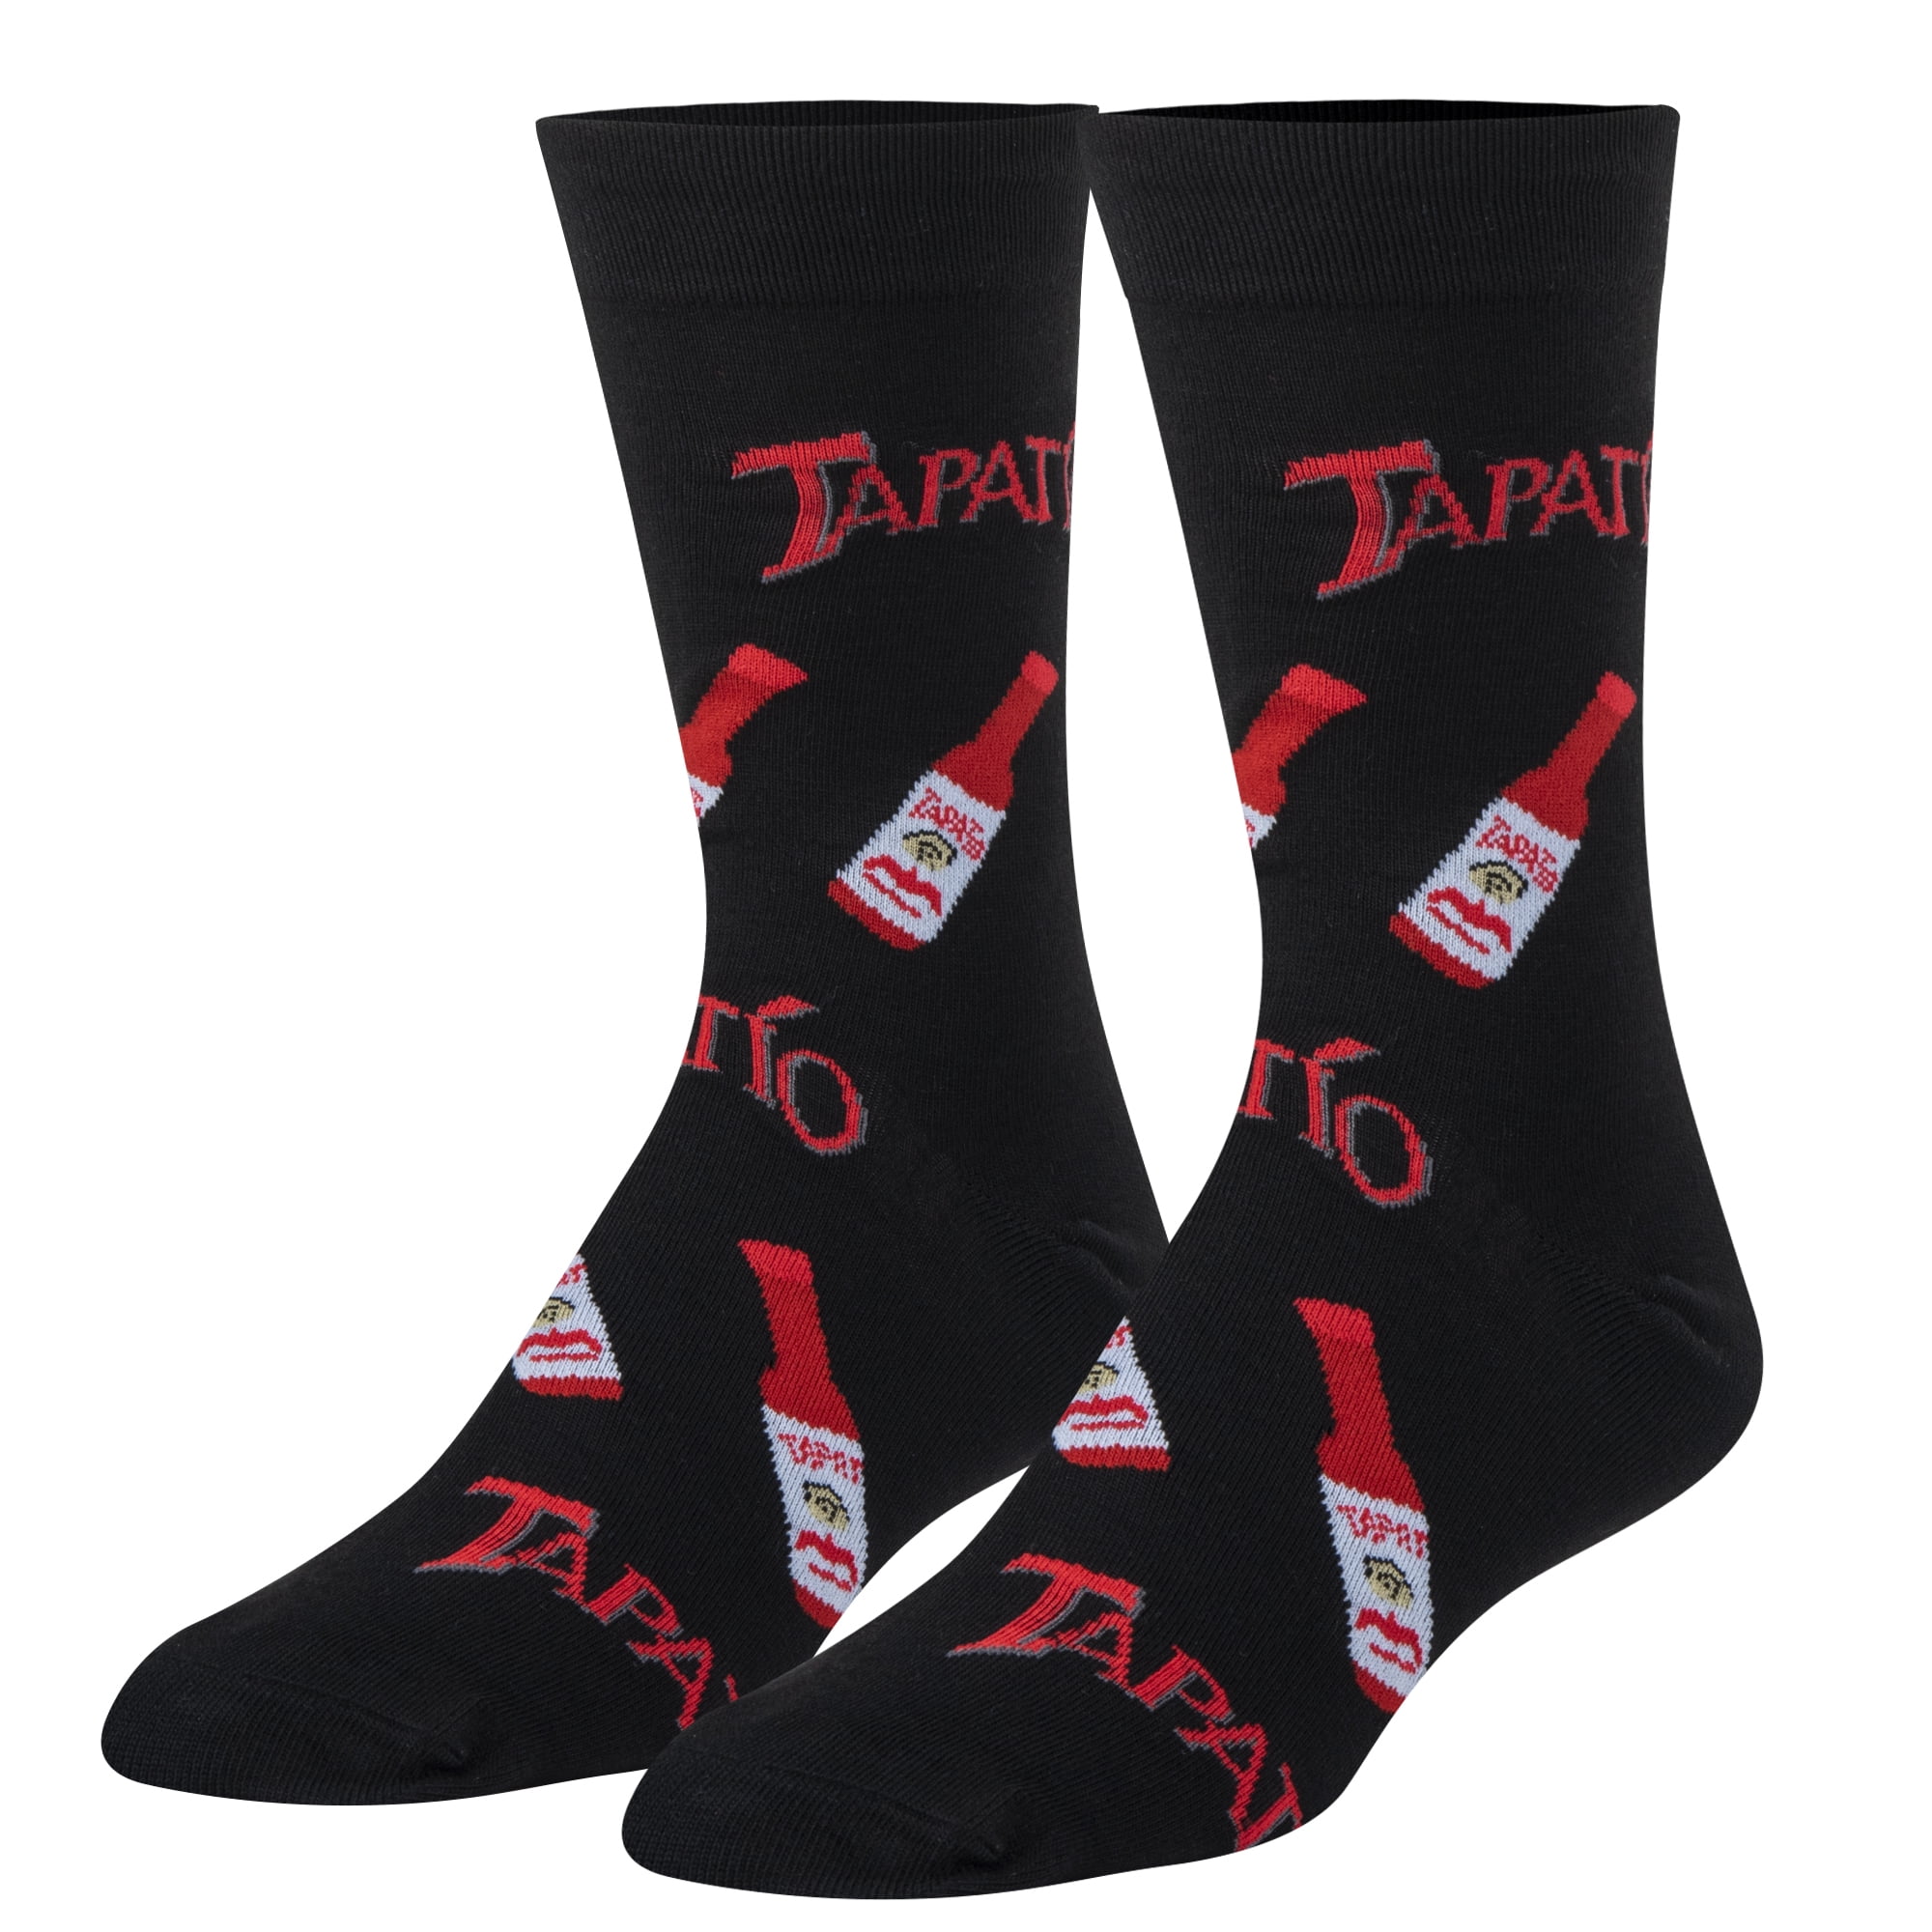 Novelty And Interesting Socks For Men And Women